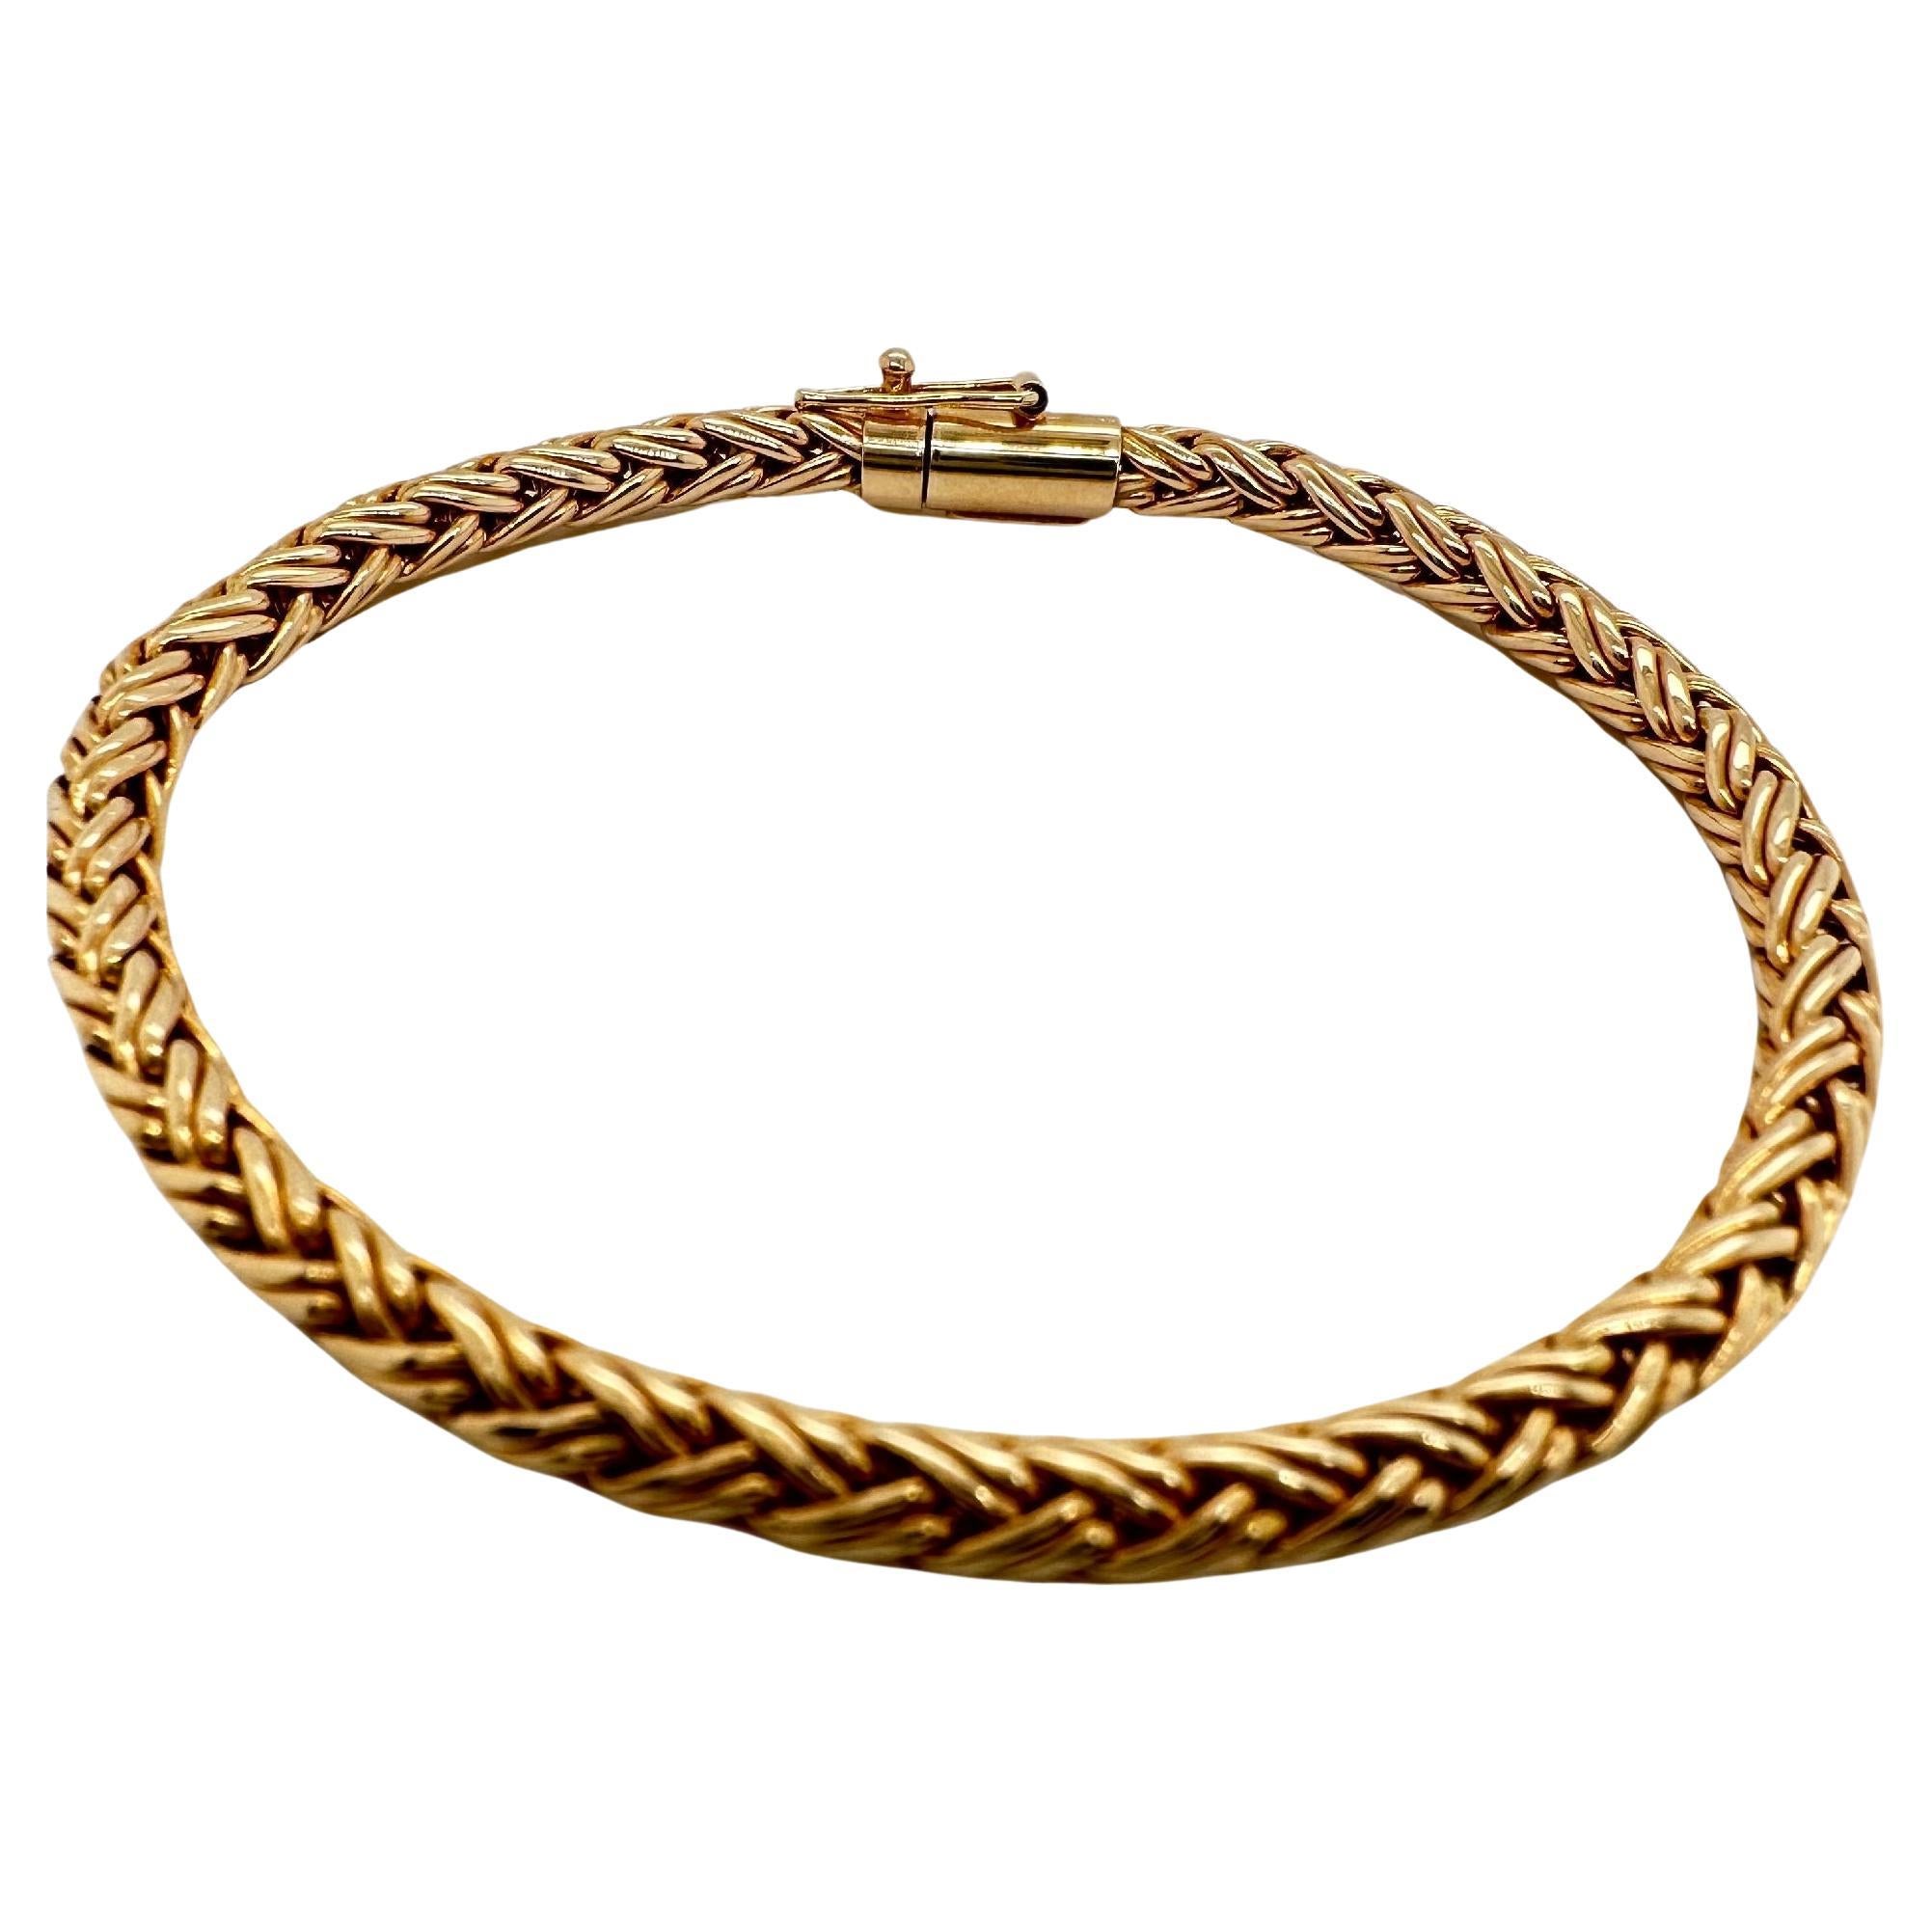 Tiffany & Co. heat geflochtenes Seil-Armband aus 14k Gelbgold